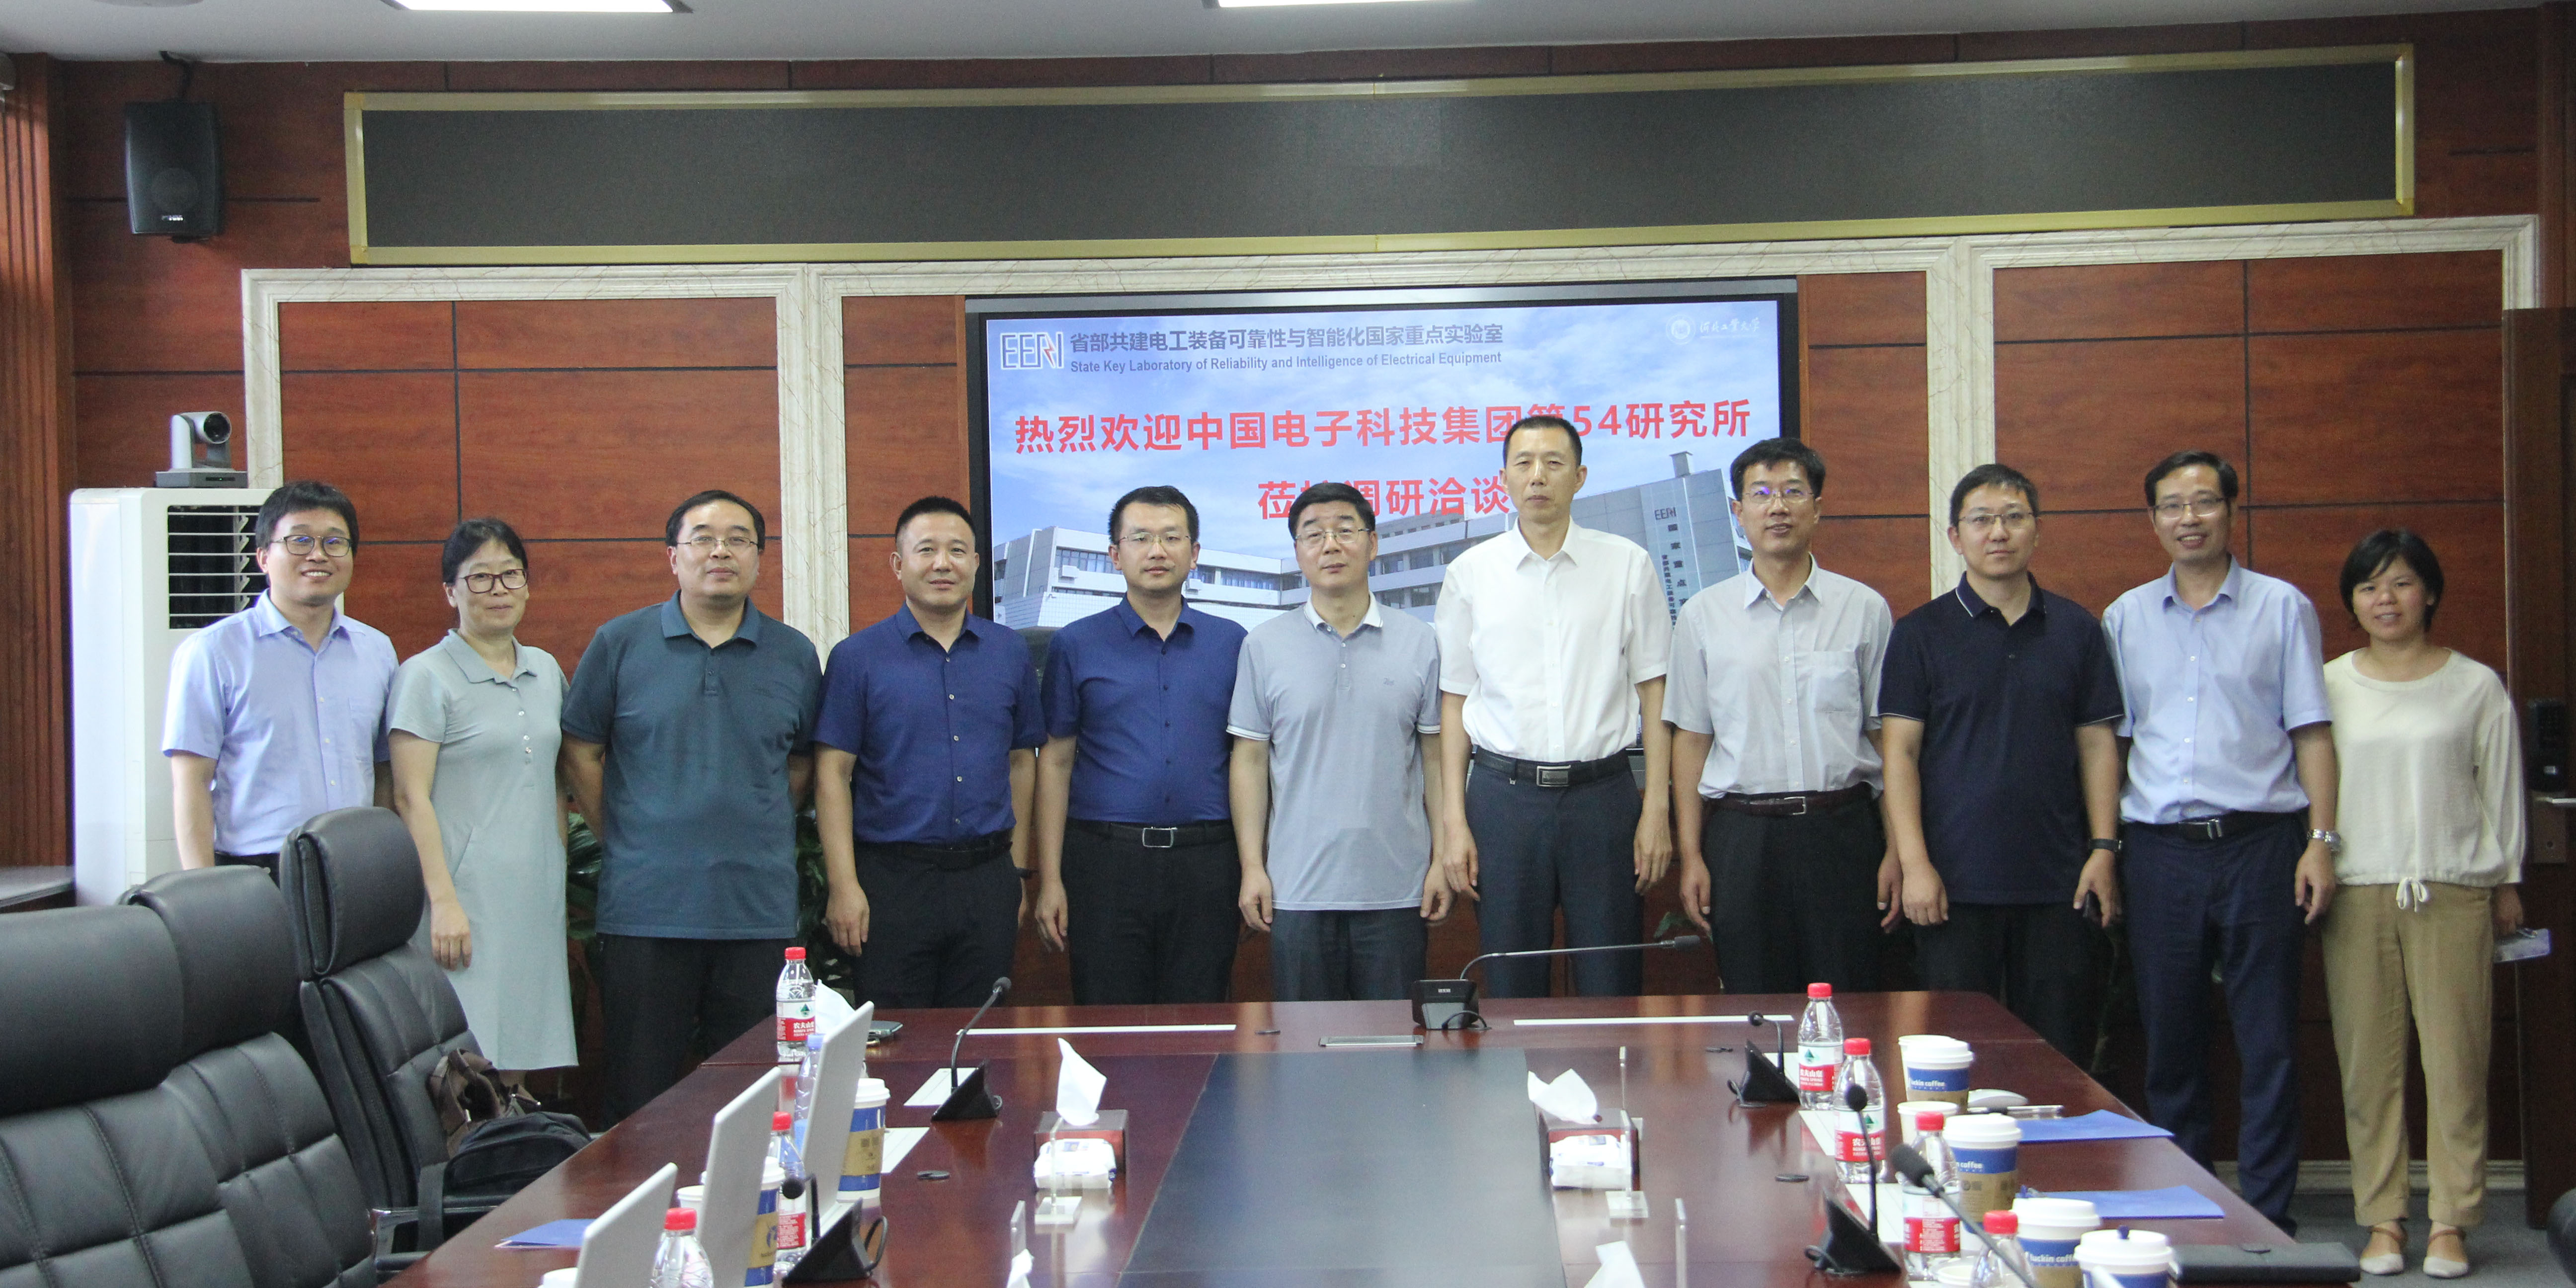 河北工业大学、中国电子科技集团第54研究所科技合作座谈会成功举办